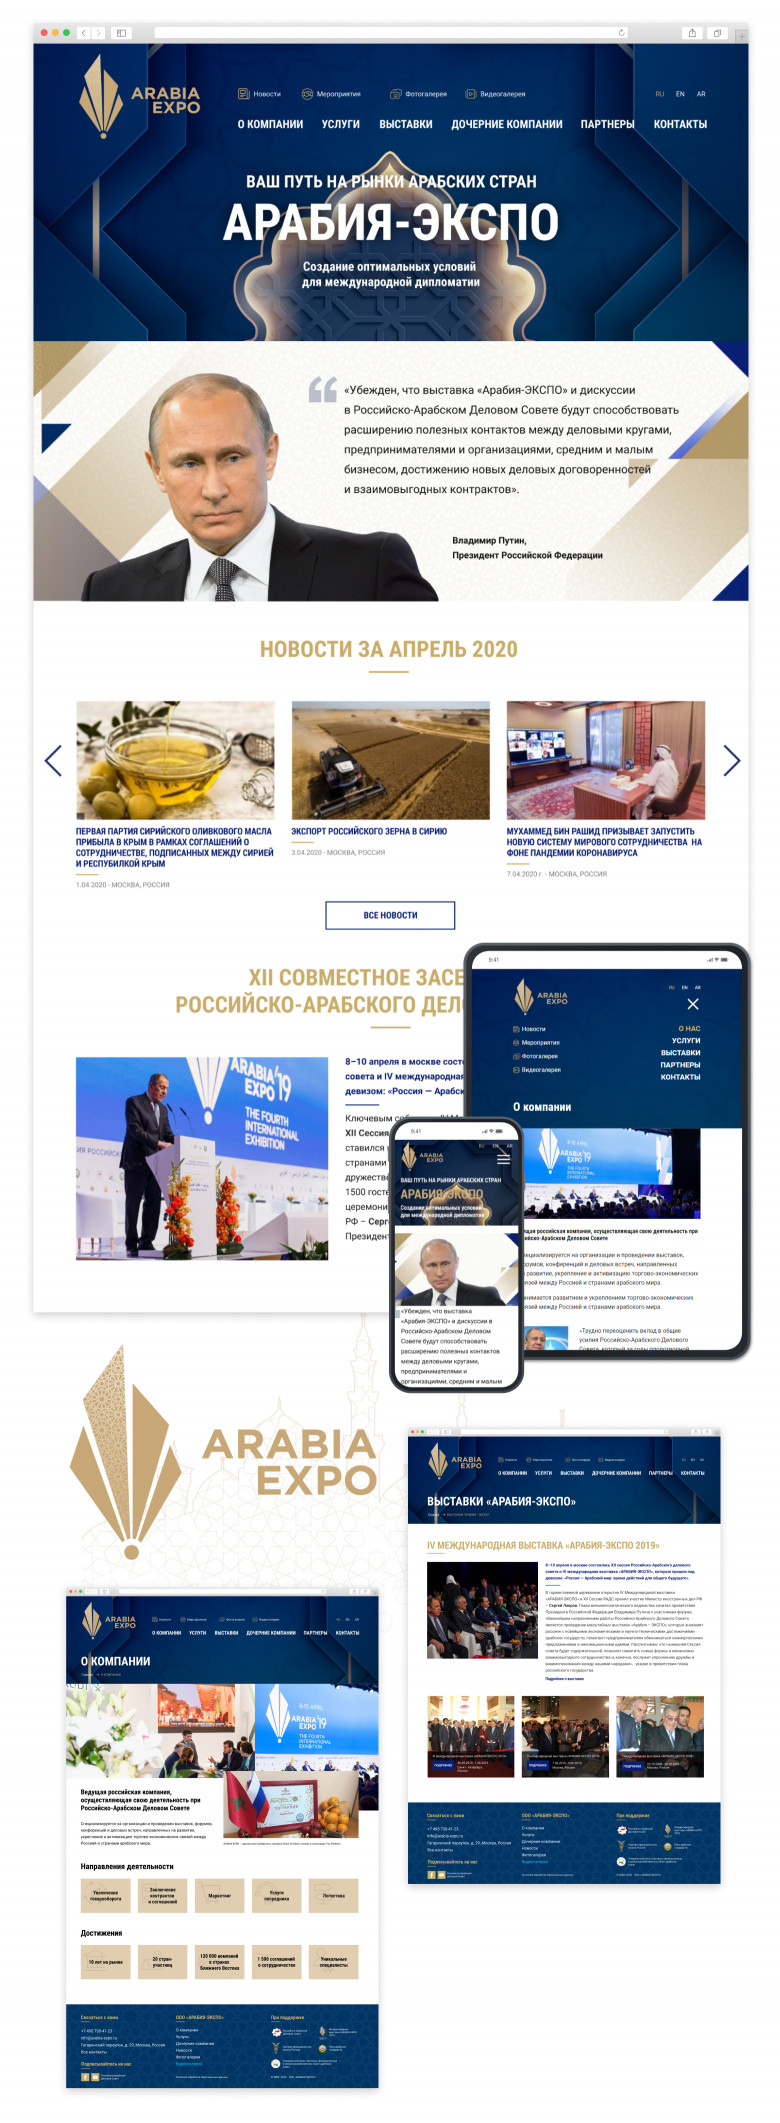 Сайт организатора мероприятий для бизнеса России и стран арабского мира Arabia‑Expo